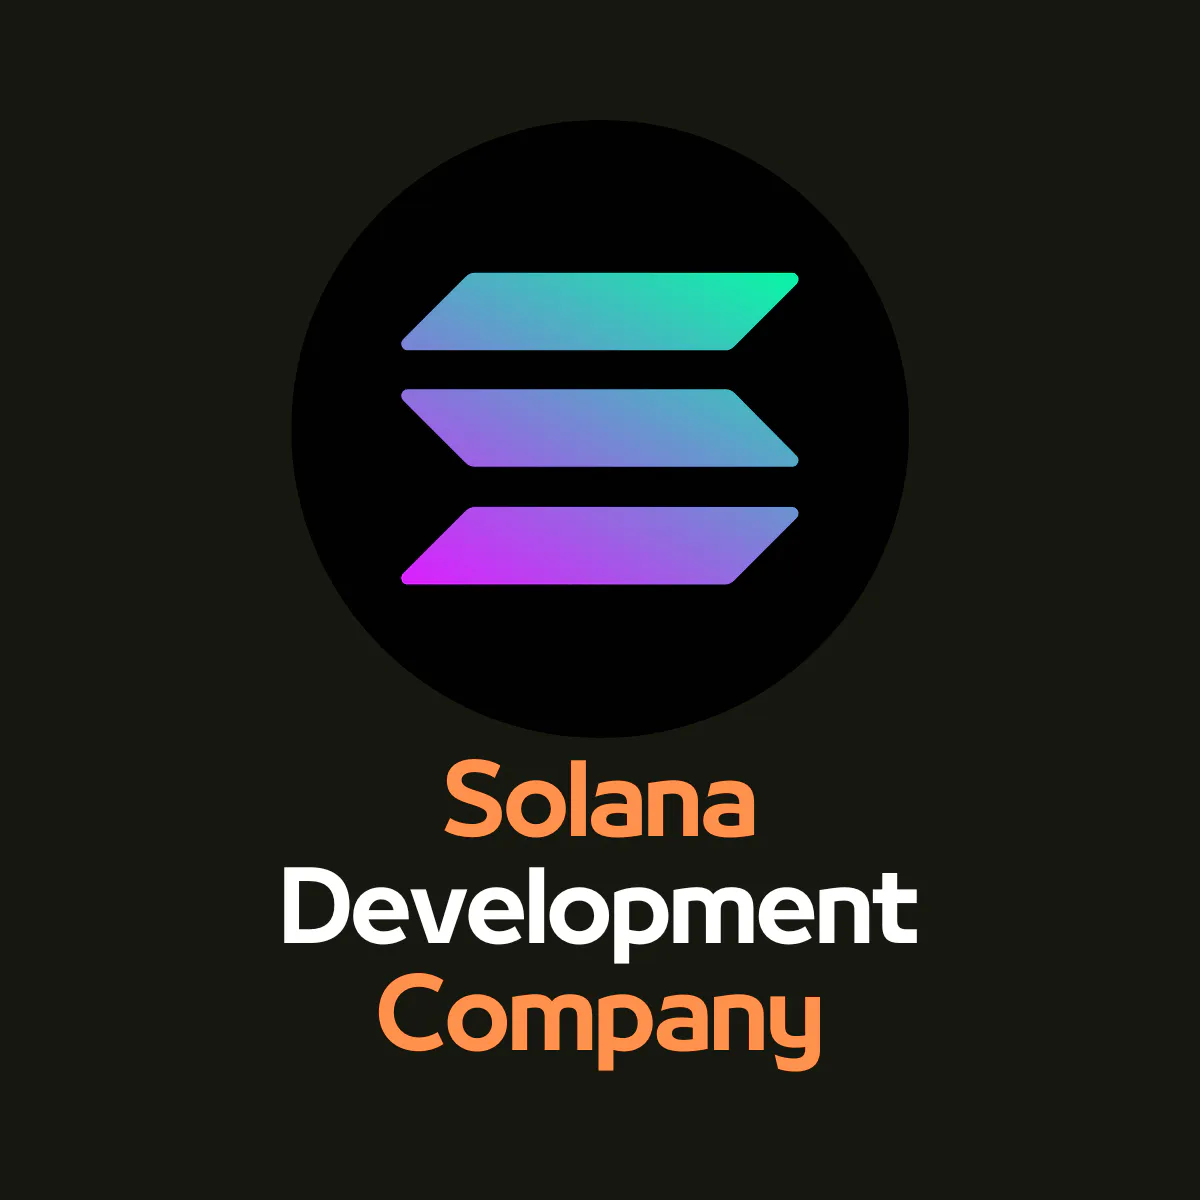 Solana Development